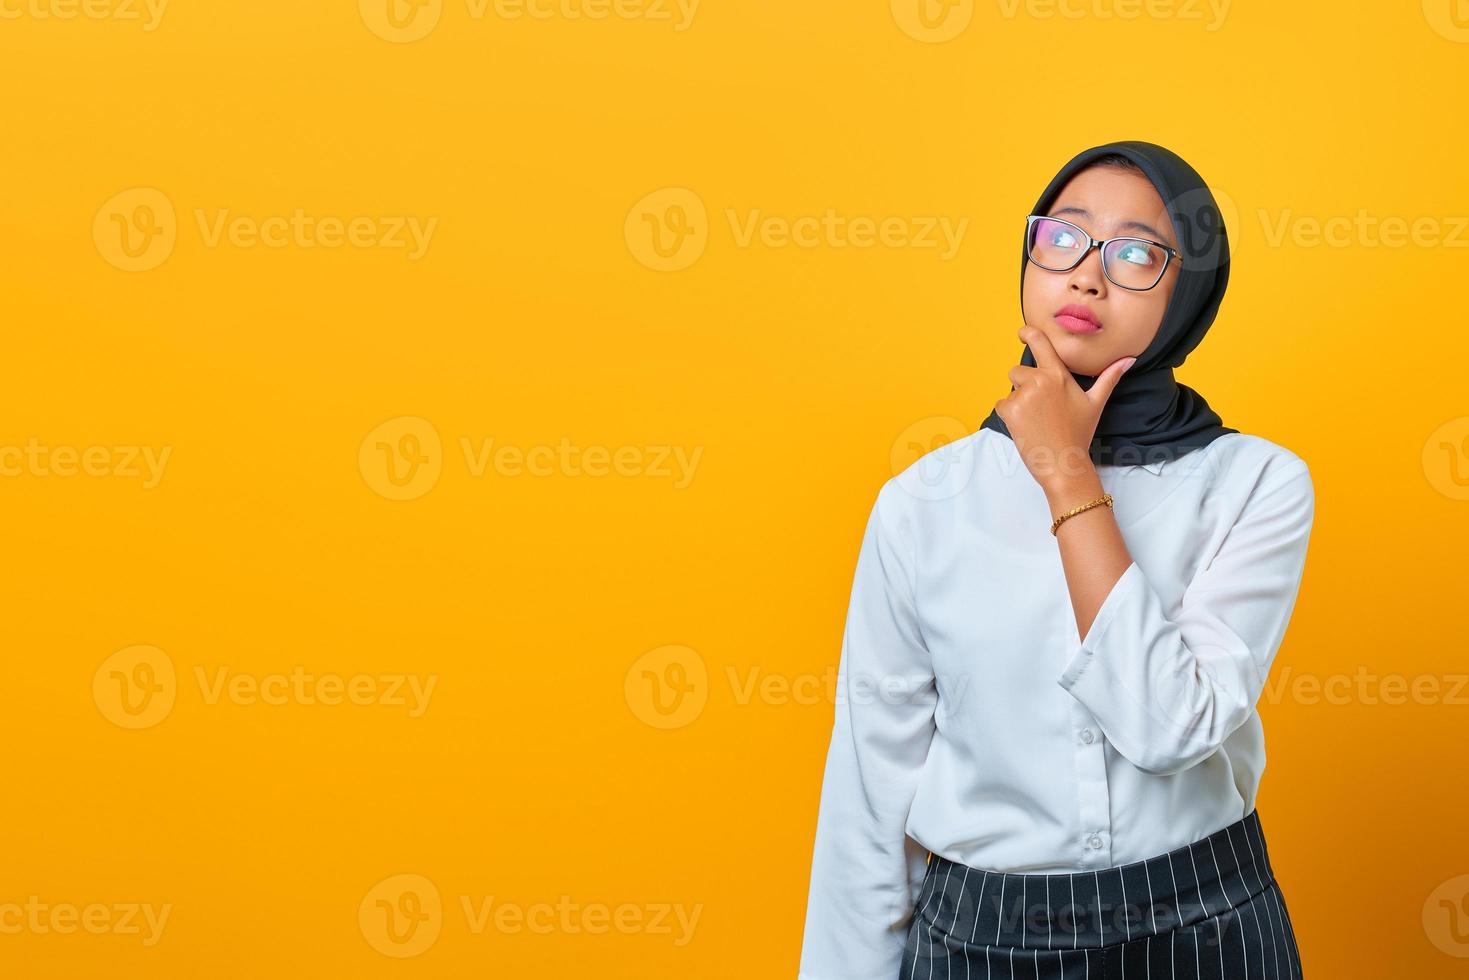 fundersam ung asiatisk kvinna ser seriöst och tänker på en fråga på gul bakgrund foto